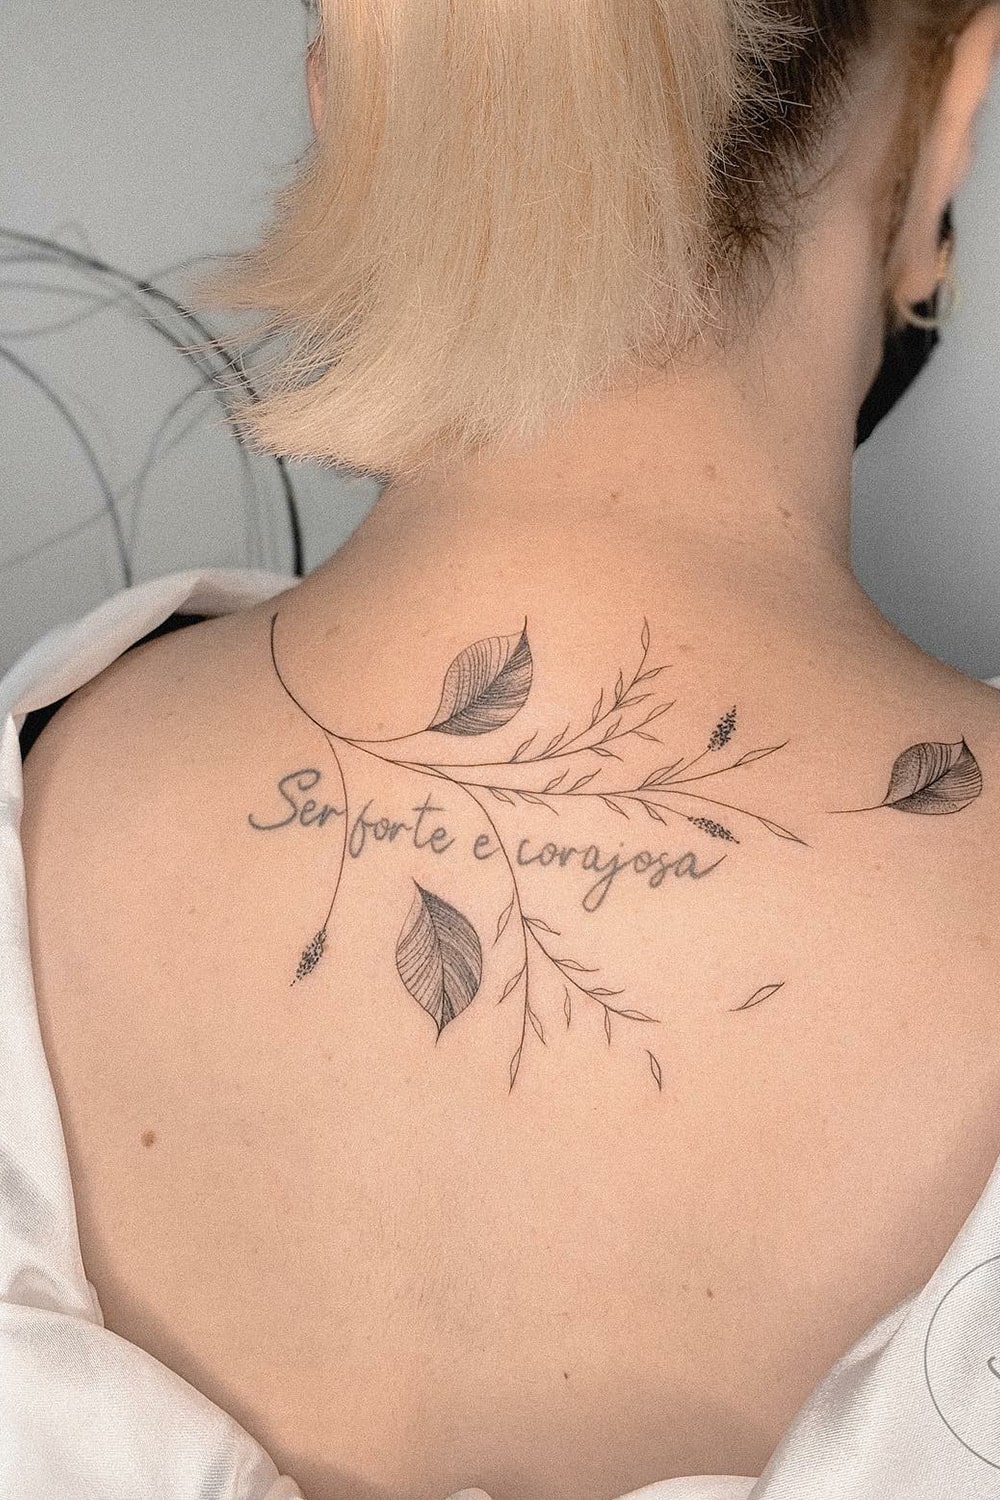 tatuagem-na-nuca-escrito-seja-forte-e-corajosa 